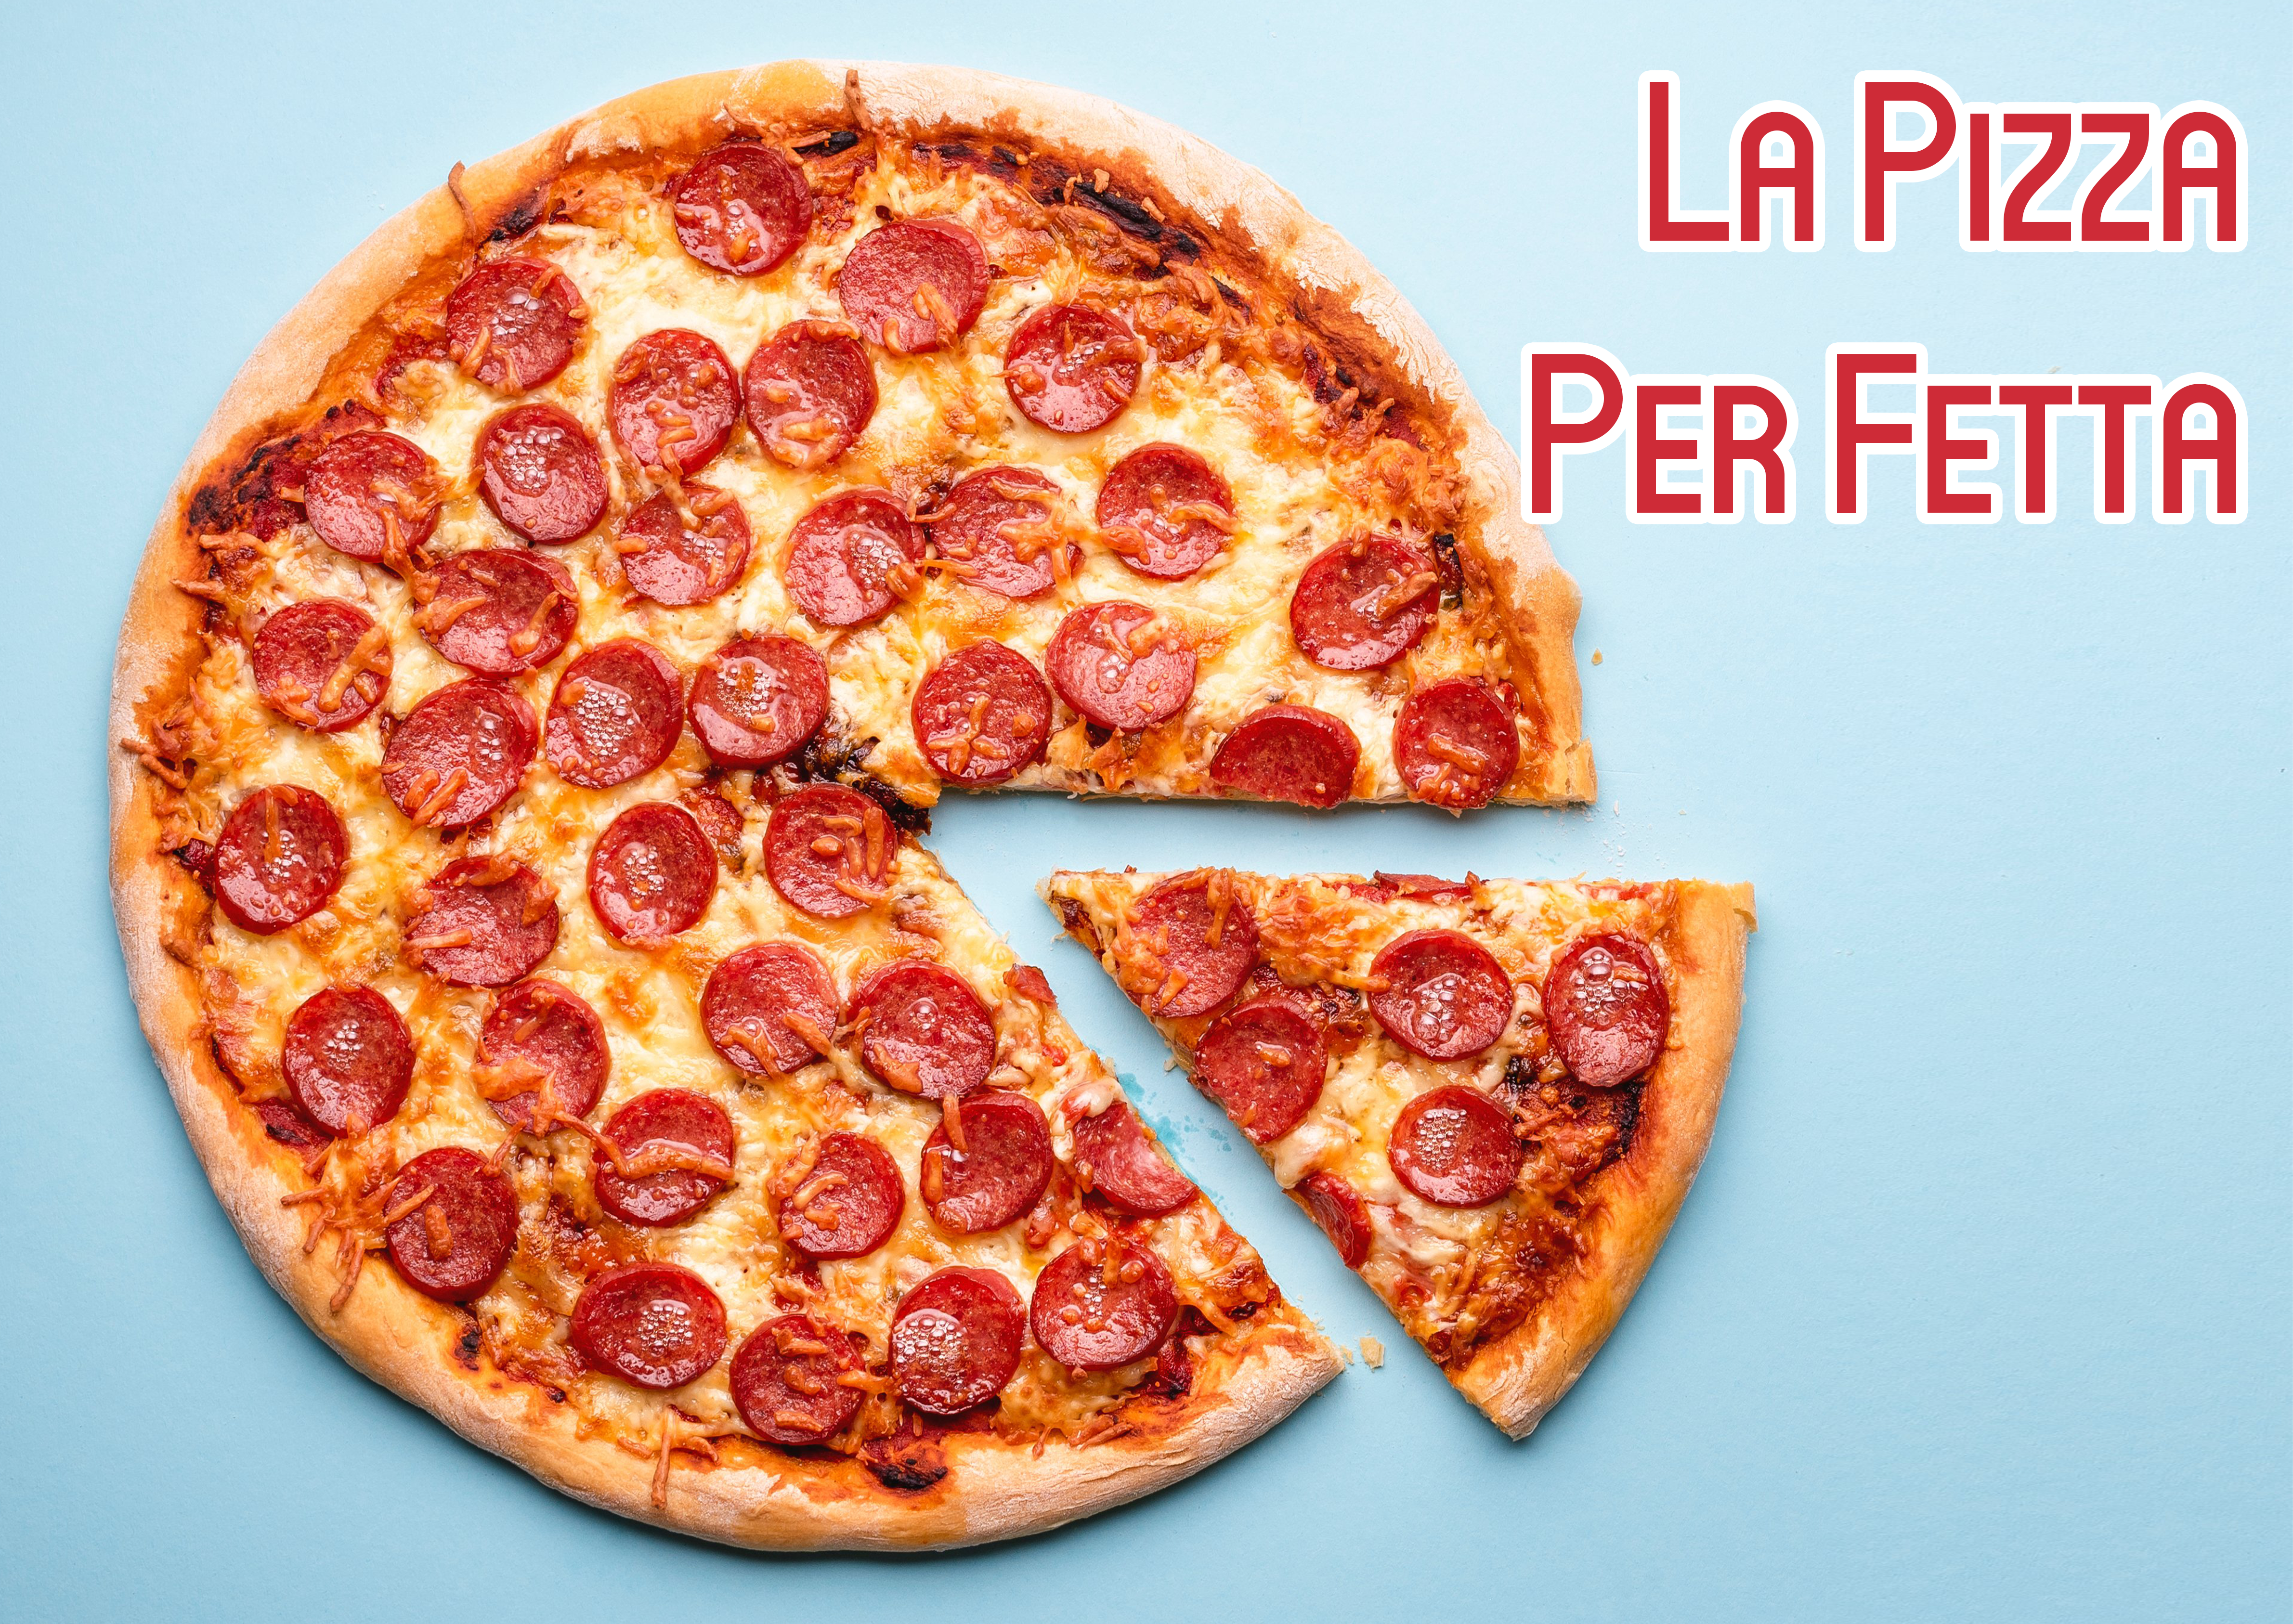 La Pizza Per Fettaイメージ